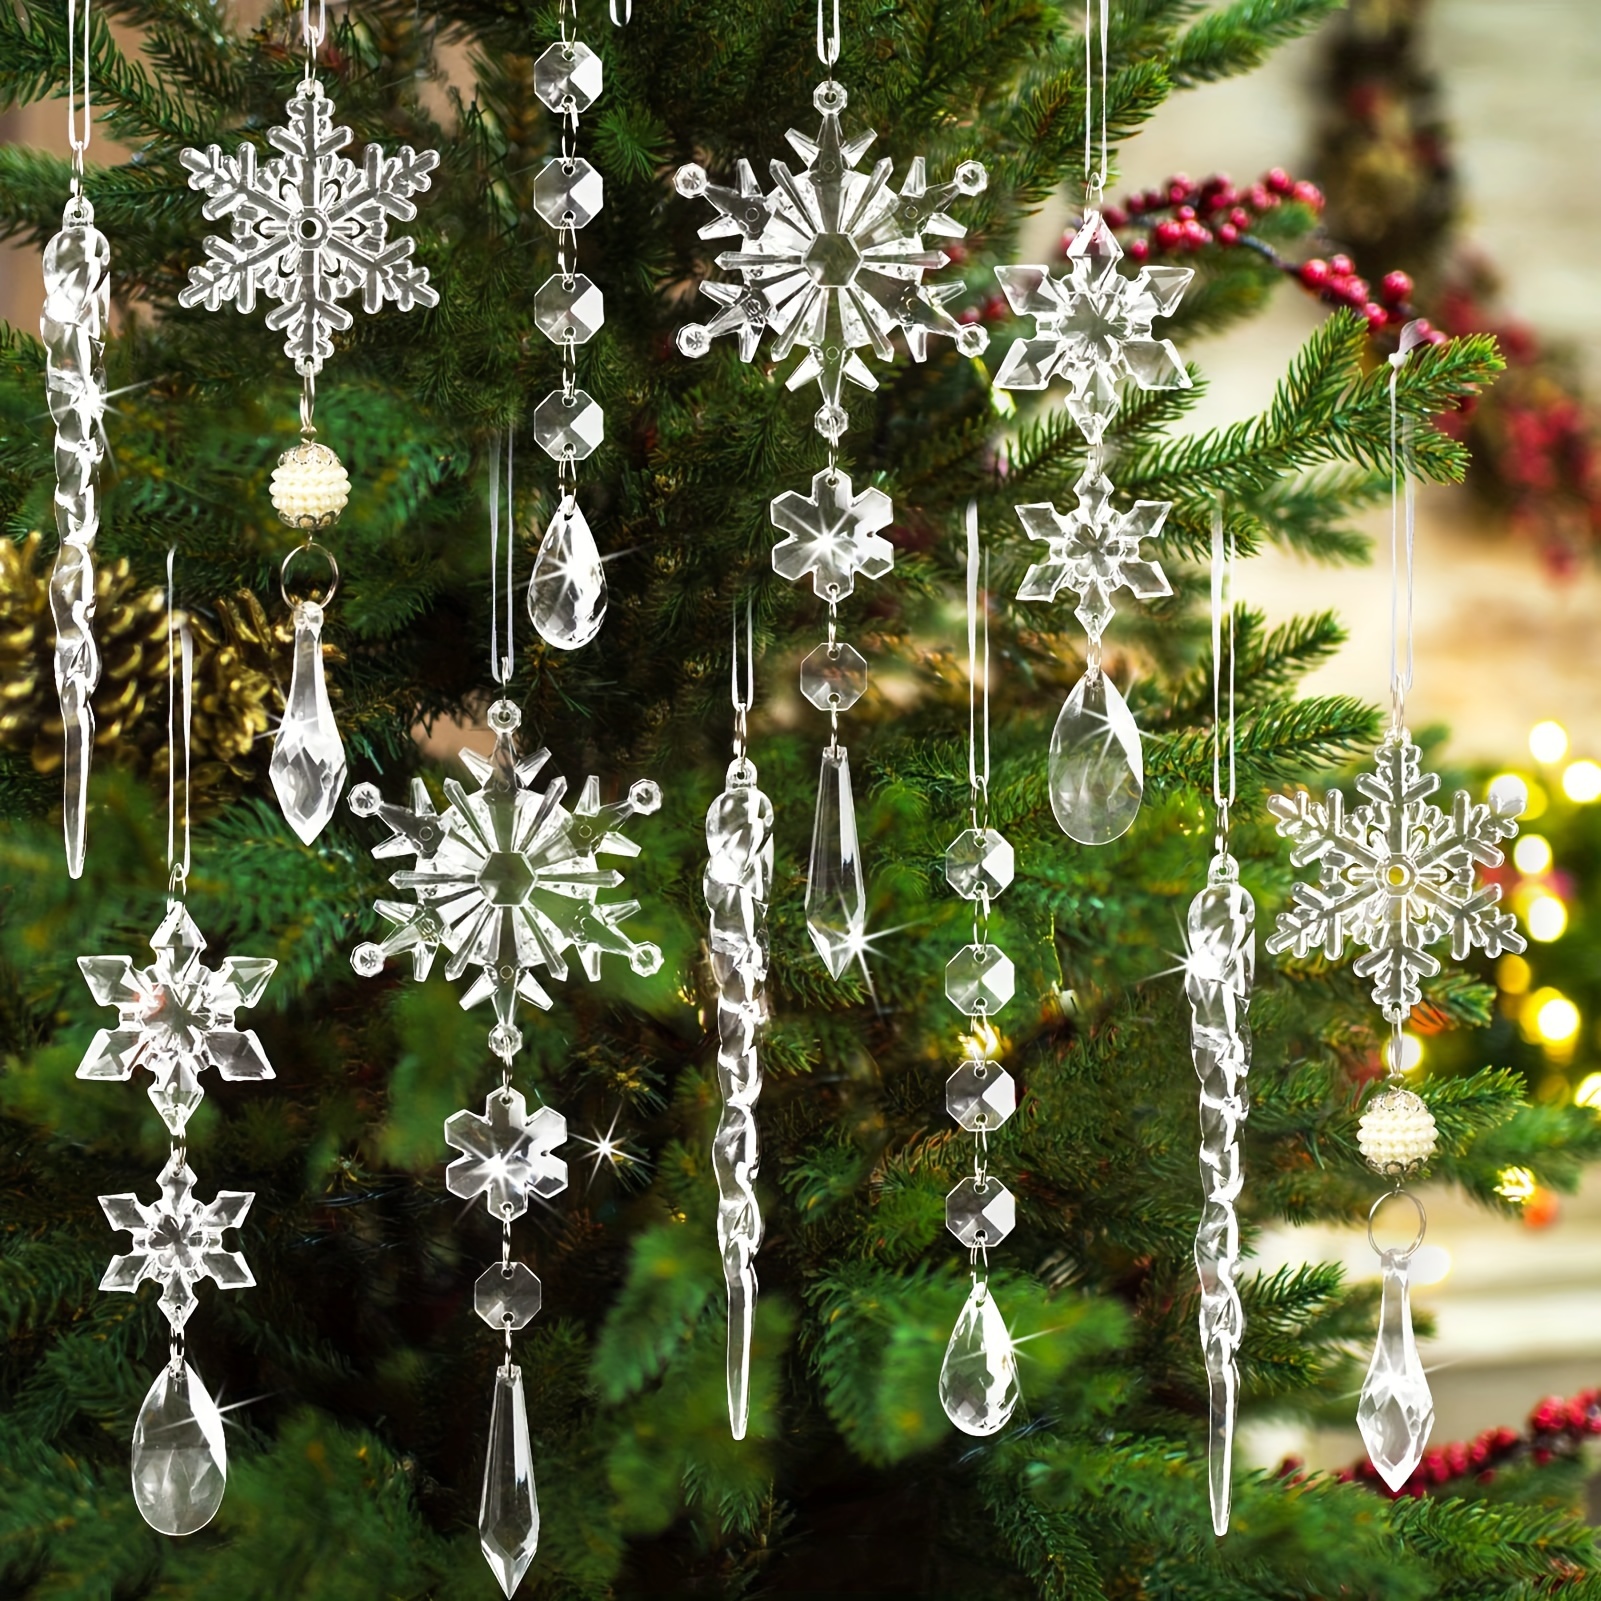 Weihnachtliche Kristall Ornamente - Kostenloser Versand Für Neue